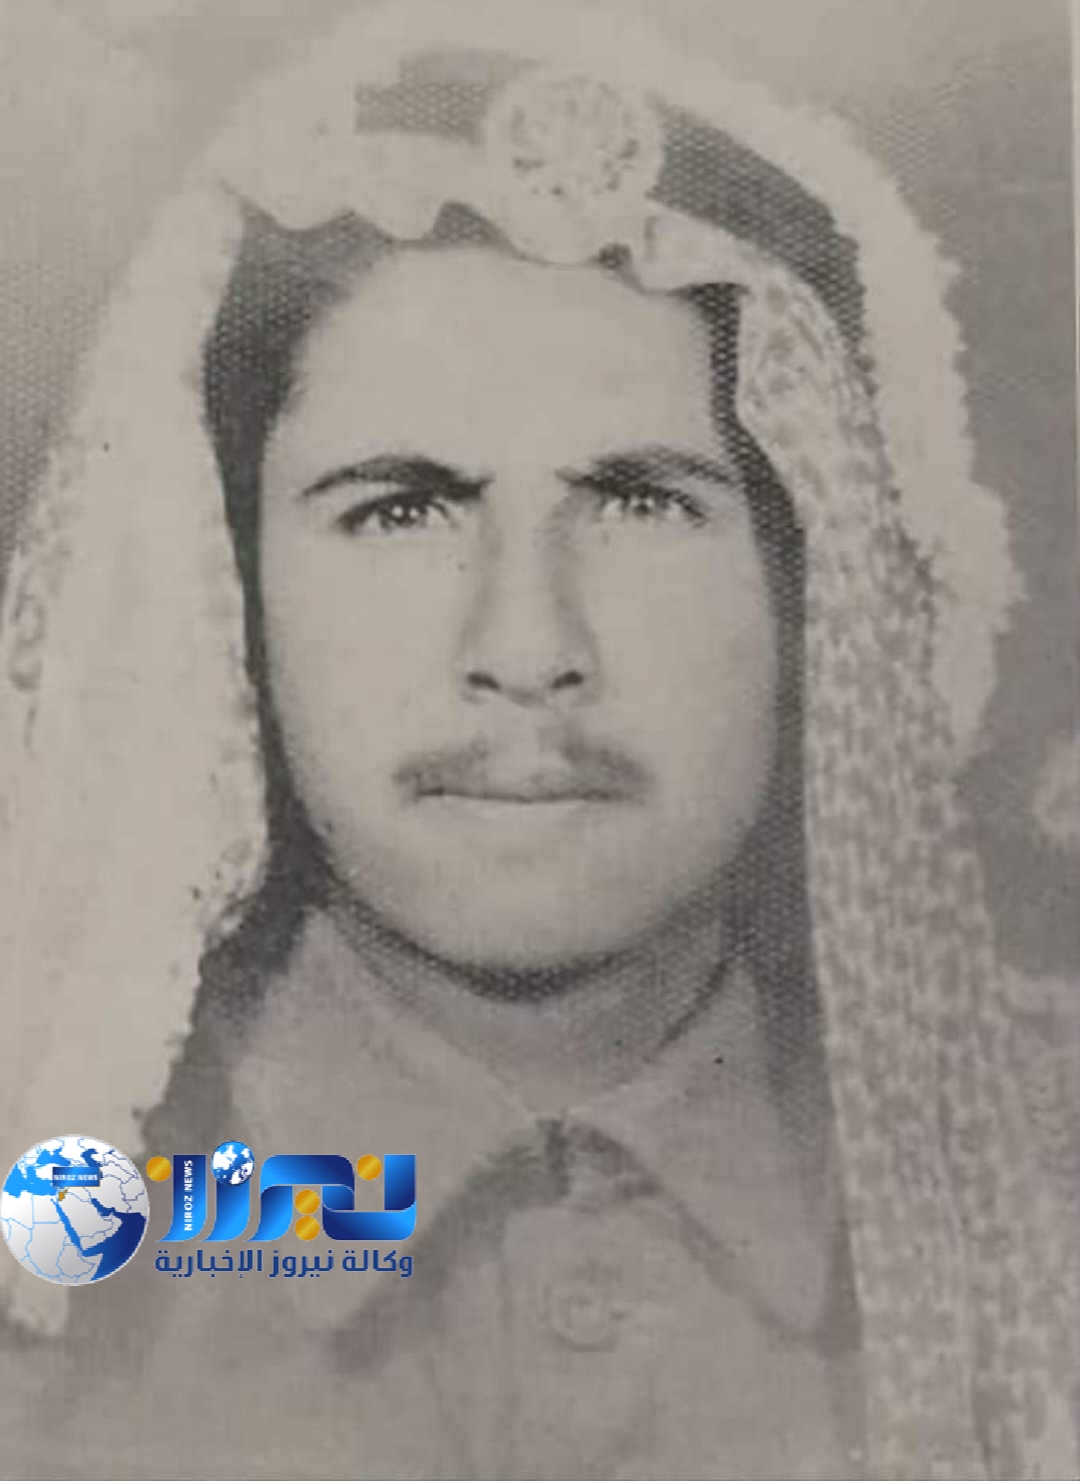 بطل من أبطال الجيش العربي الشهيد حامد مصيبح عواد الشرفات